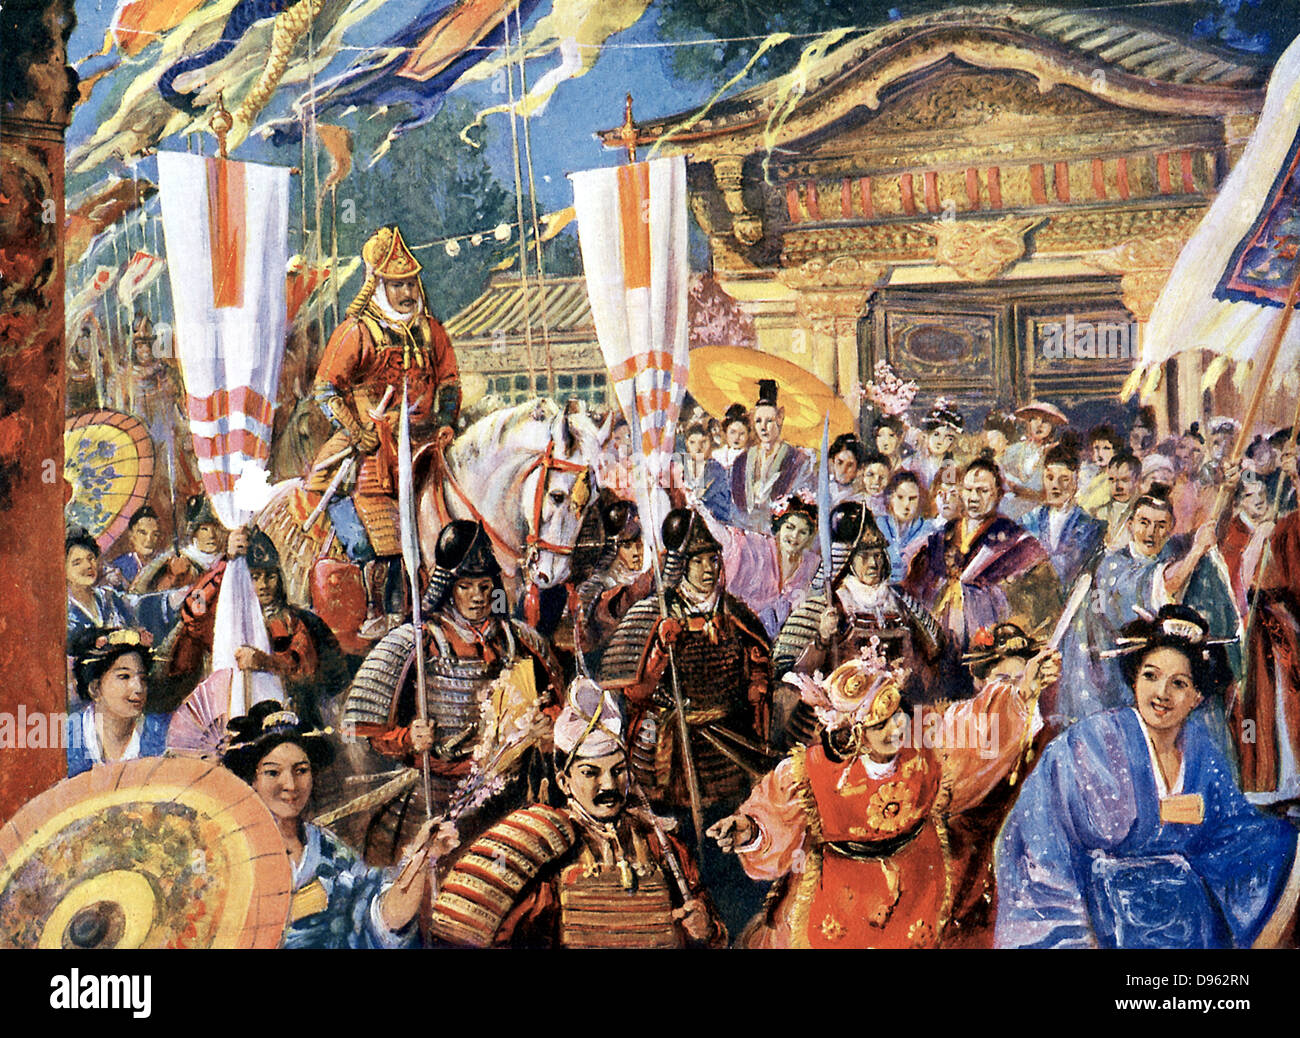 Yorimoto Minamoto (1147-1199) guerriero Giapponese e fondatore della forma feudale del governo giapponese, il Governo Shogunale, 1192. Artista della impressione. Foto Stock